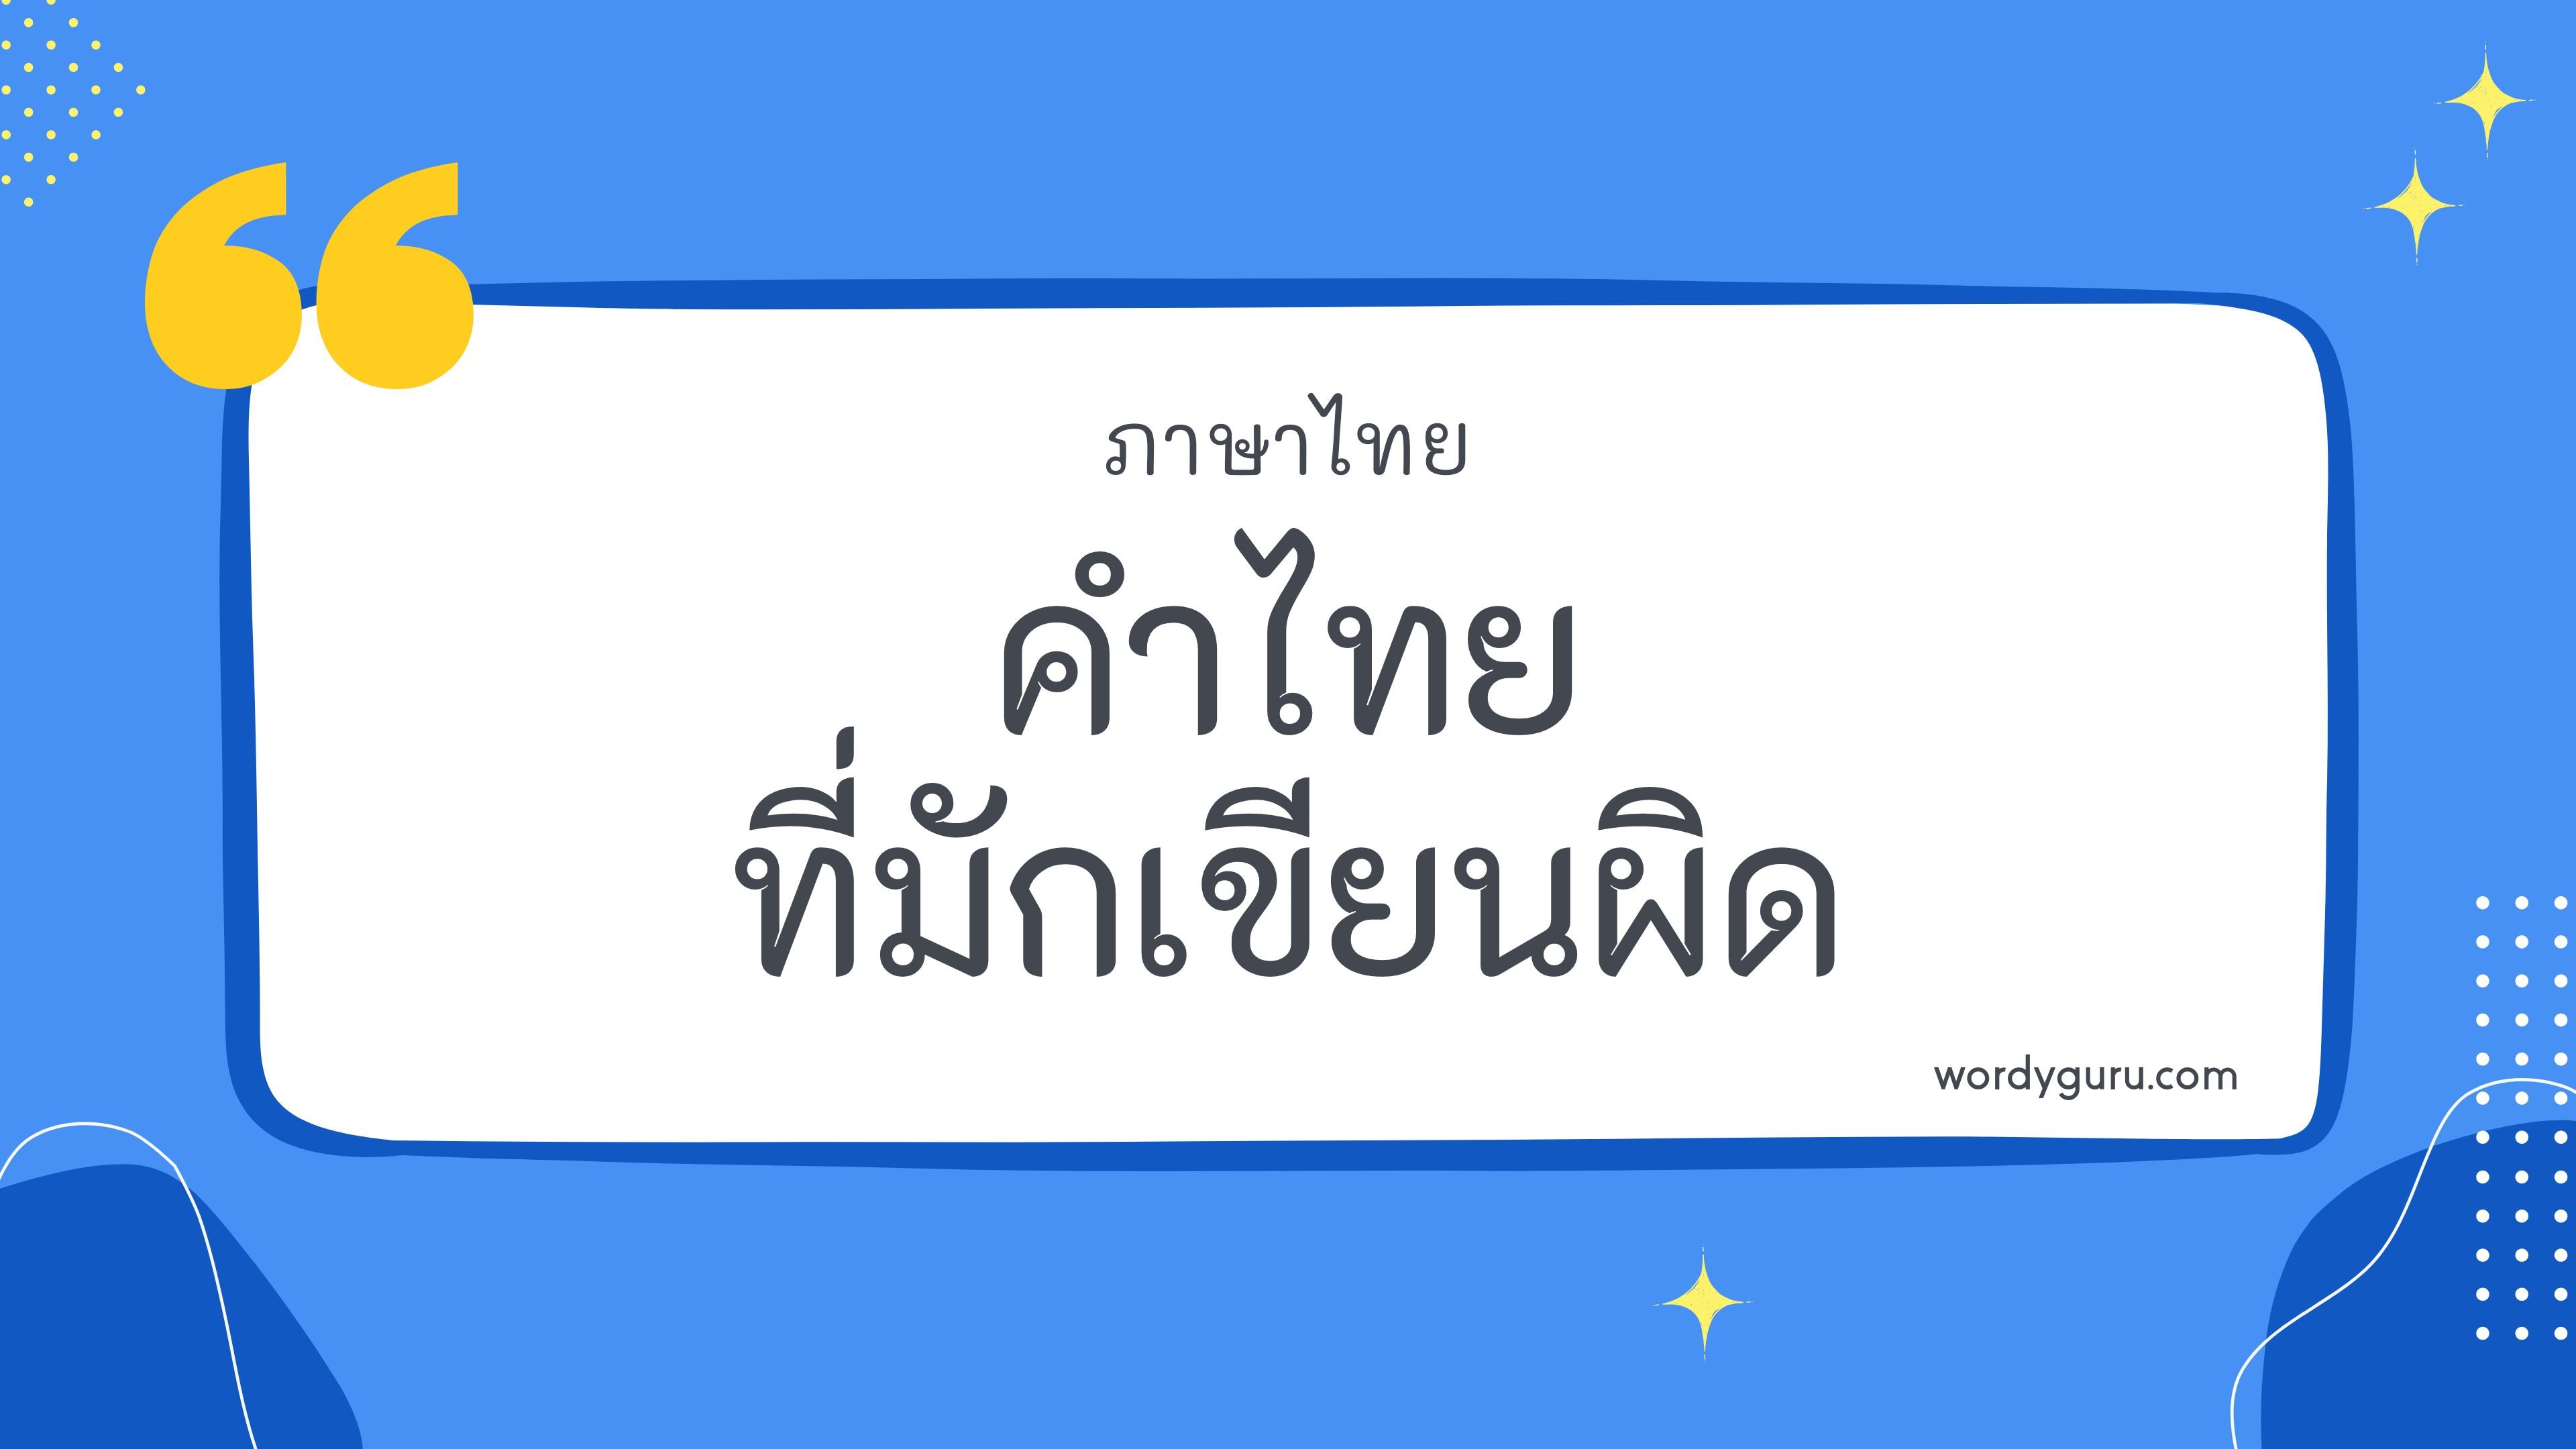 คำไทยที่มักเขียนผิด หมวด ถ ตามที่เคยรู้จัก คำในภาษาไทยที่มักเขียนผิด มีอยู่หลายคำ จะมีคำไหนที่เรารู้จักไหมนะ